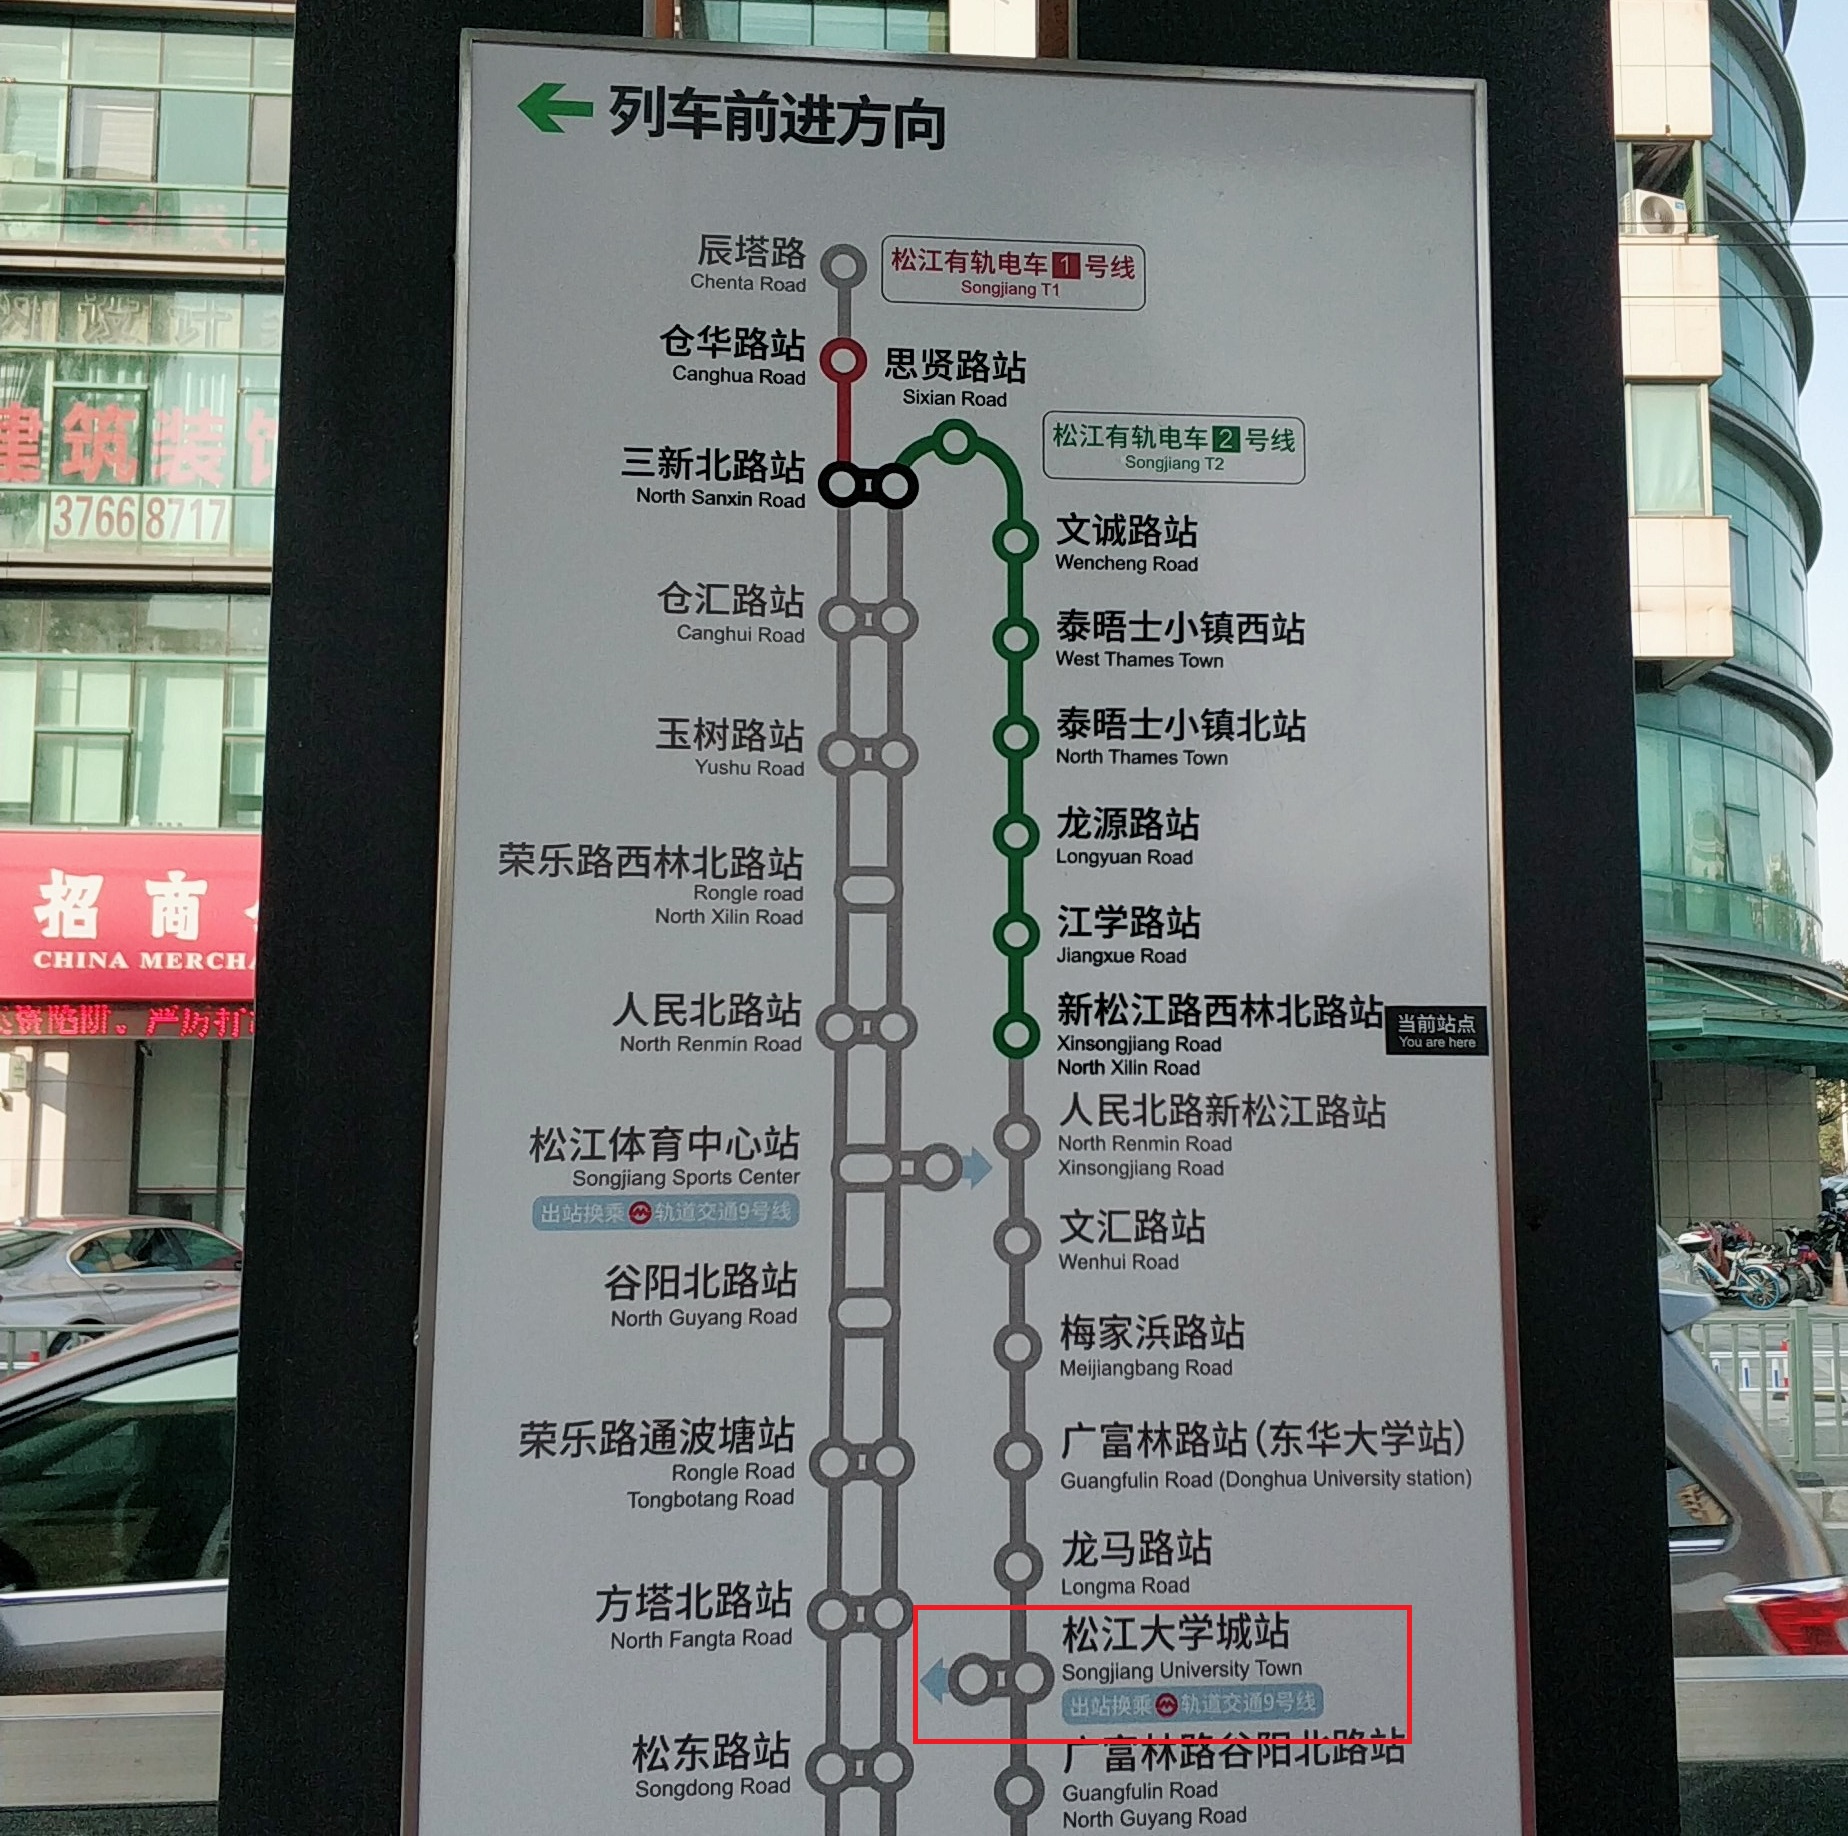 上海松江有轨电车的专用轨道应当敬畏,随意驶入容易引发严重后果